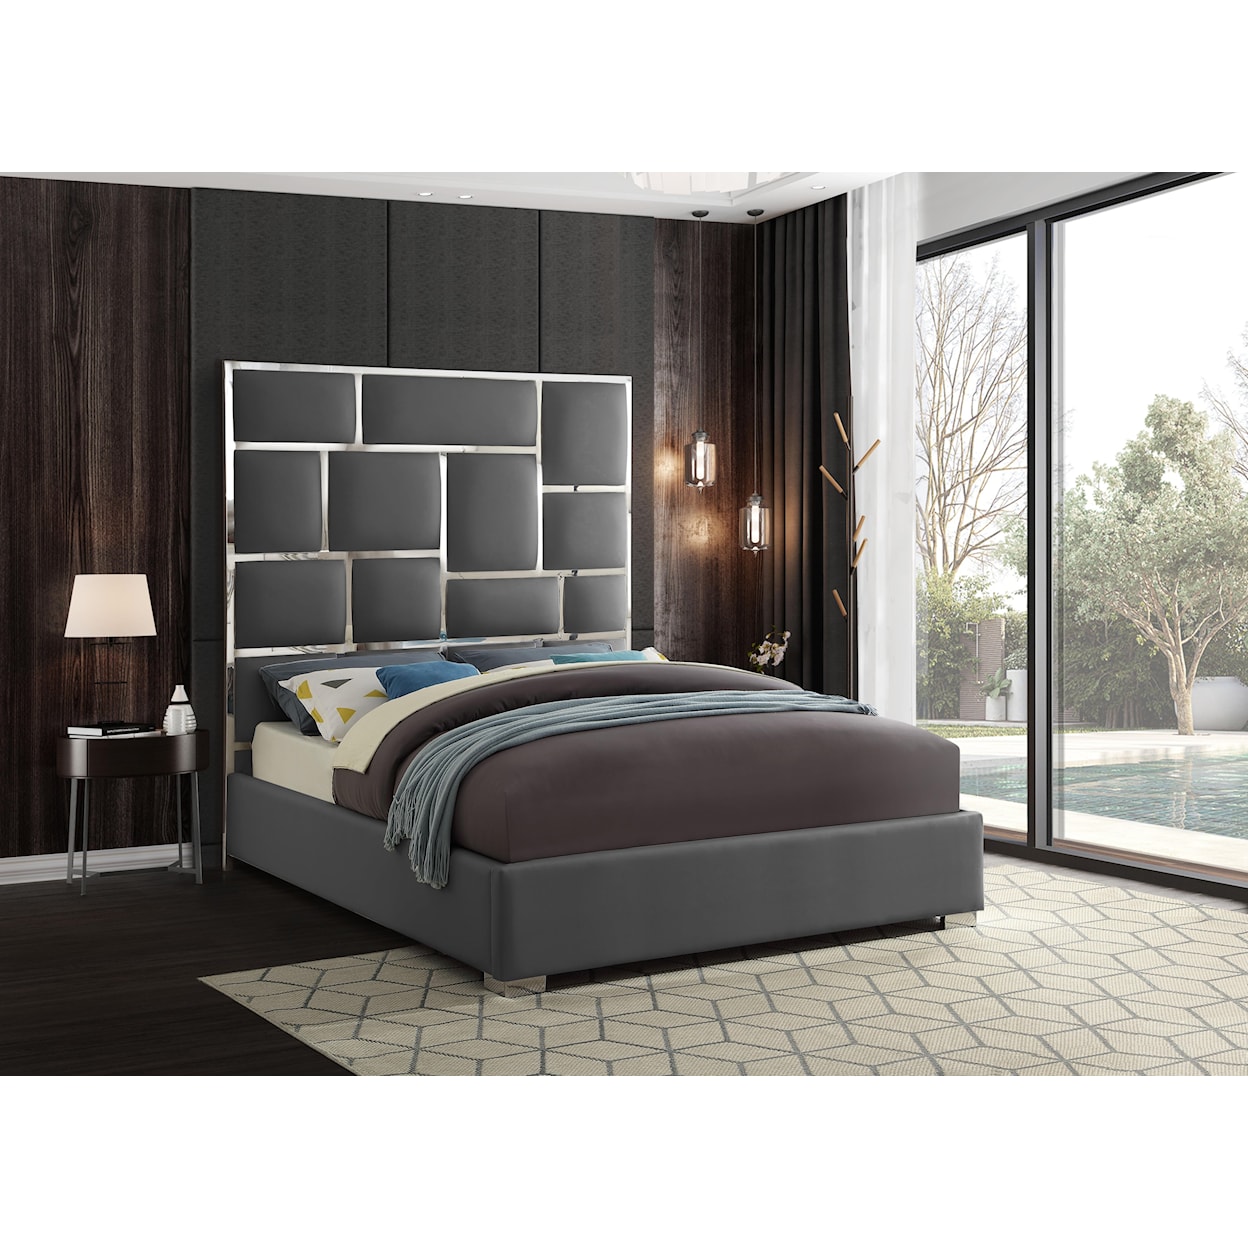 Meridian Furniture Milan King Bed